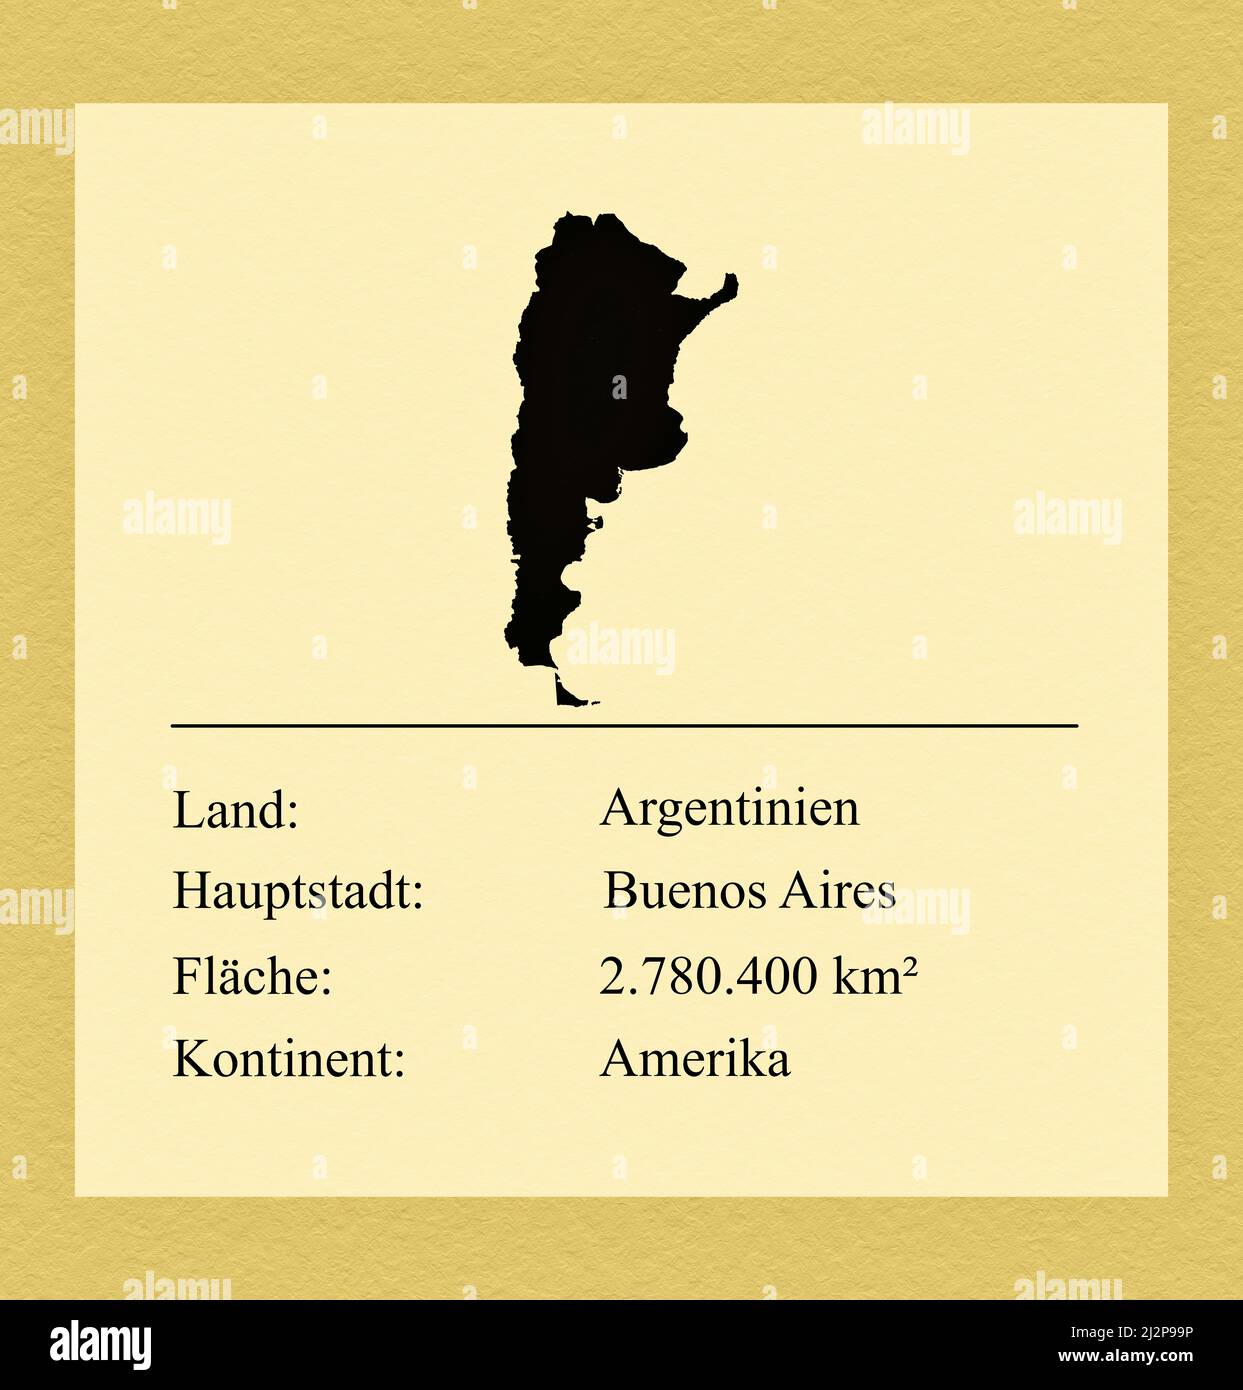 Umrisse des Landes Argentinien, darunter ein kleiner Steckbrief mit Ländernamen, Hauptstadt, Fläche und Kontinent Stock Photo